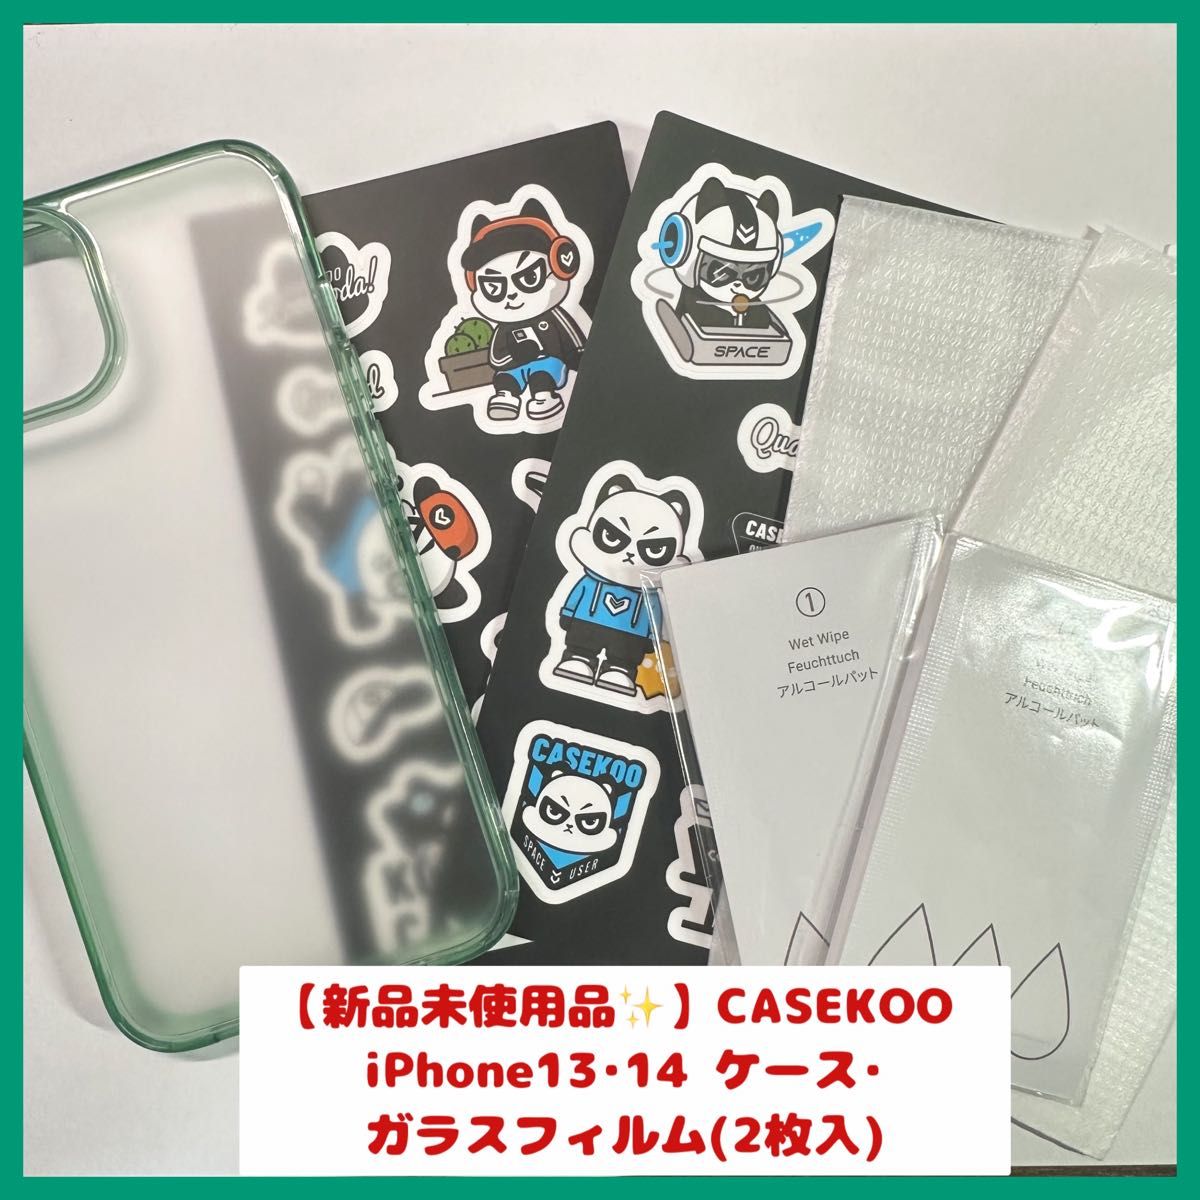 【新品未使用品 送料無料】CASEKOO iPhone13 iPhone14 ケース/ガラスフィルム(2枚入)